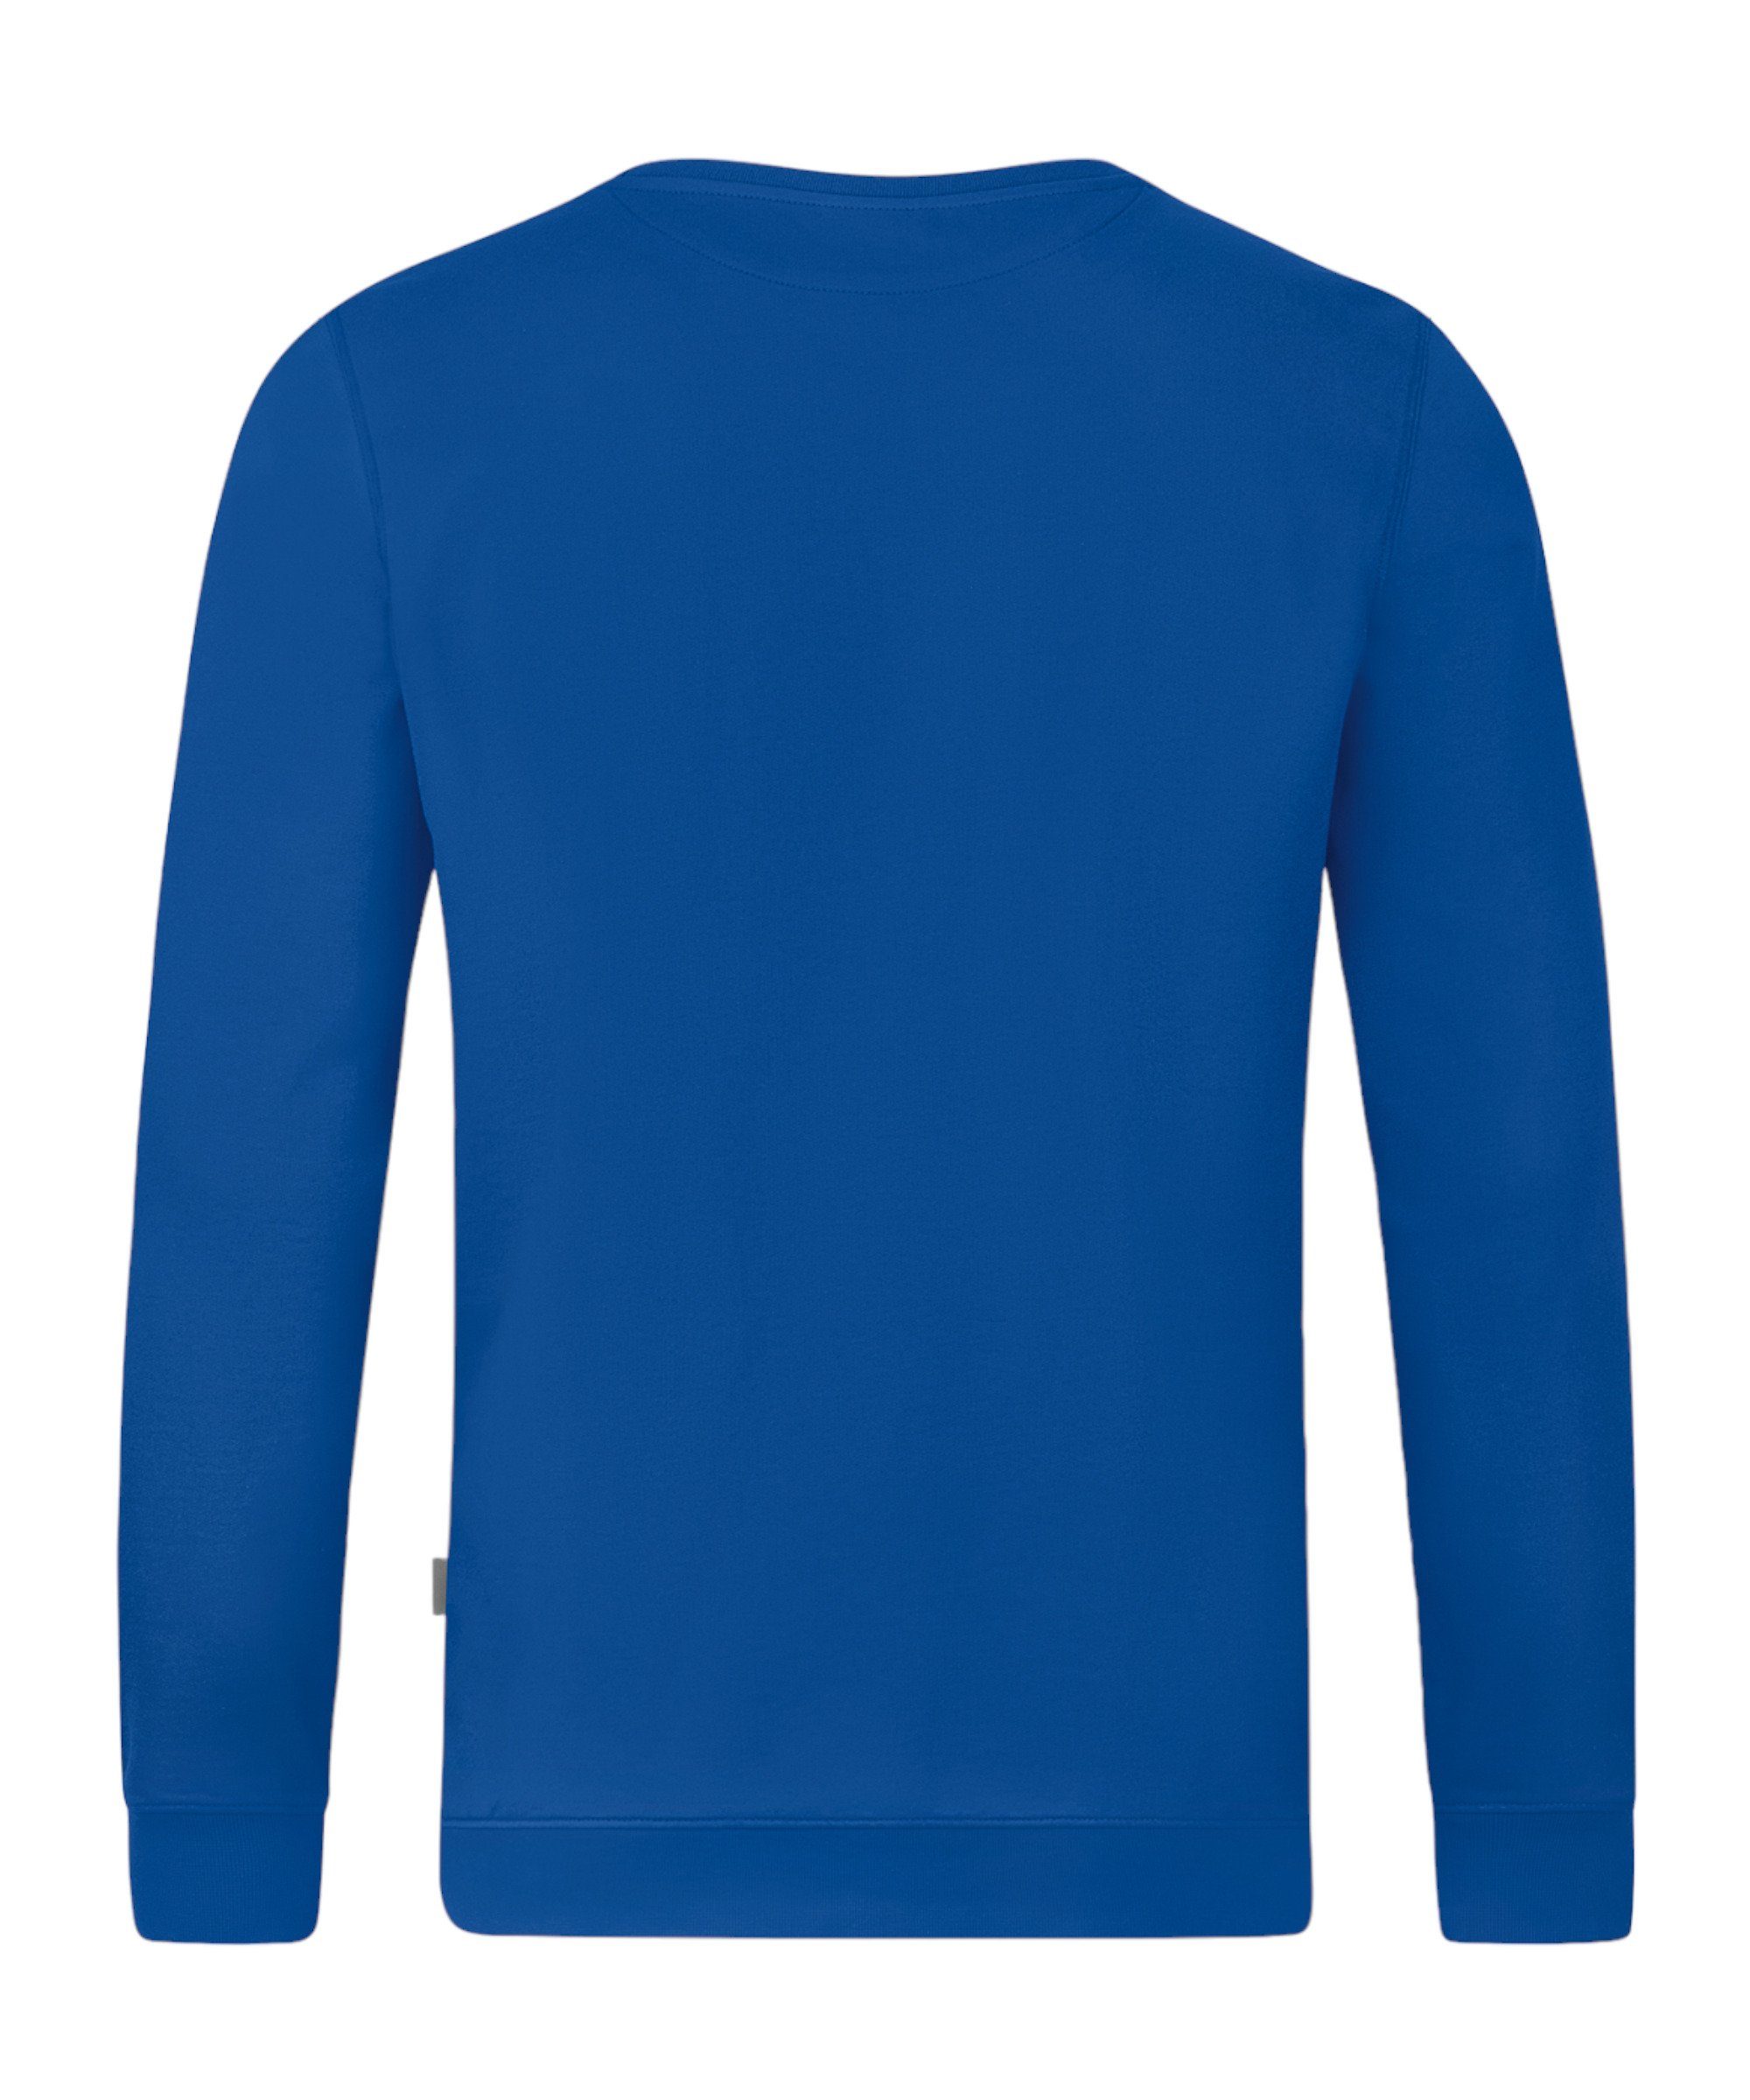 Sweatshirt Doubletex Jako blau Sweatshirt